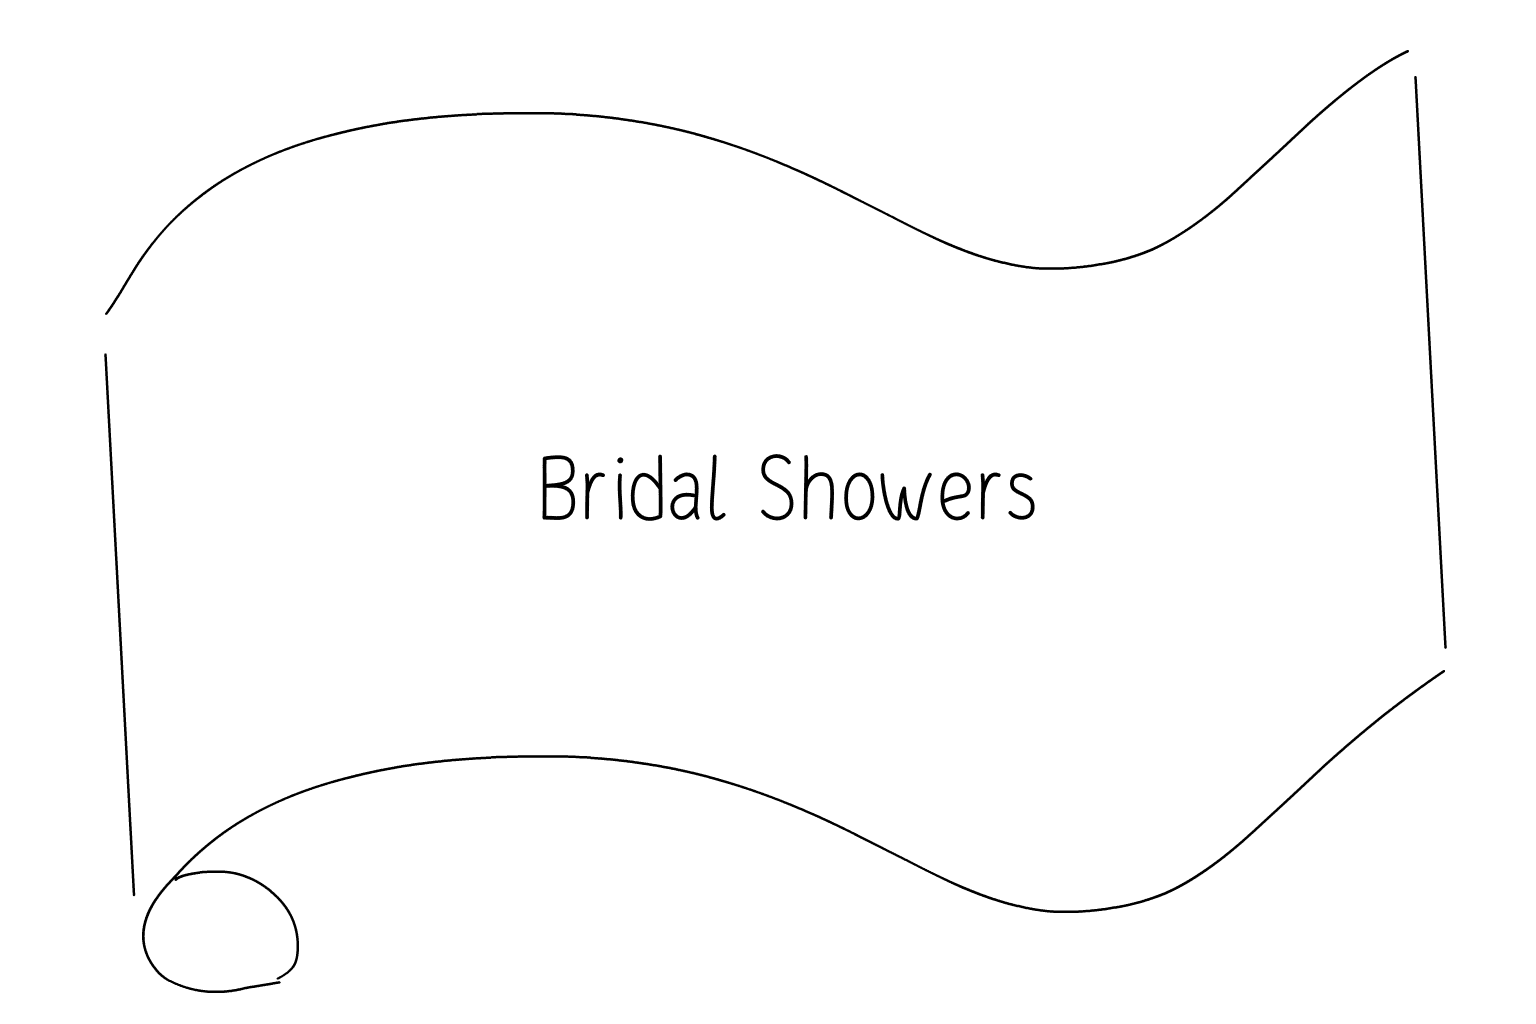 Иллюстрация свадьбы и девичника